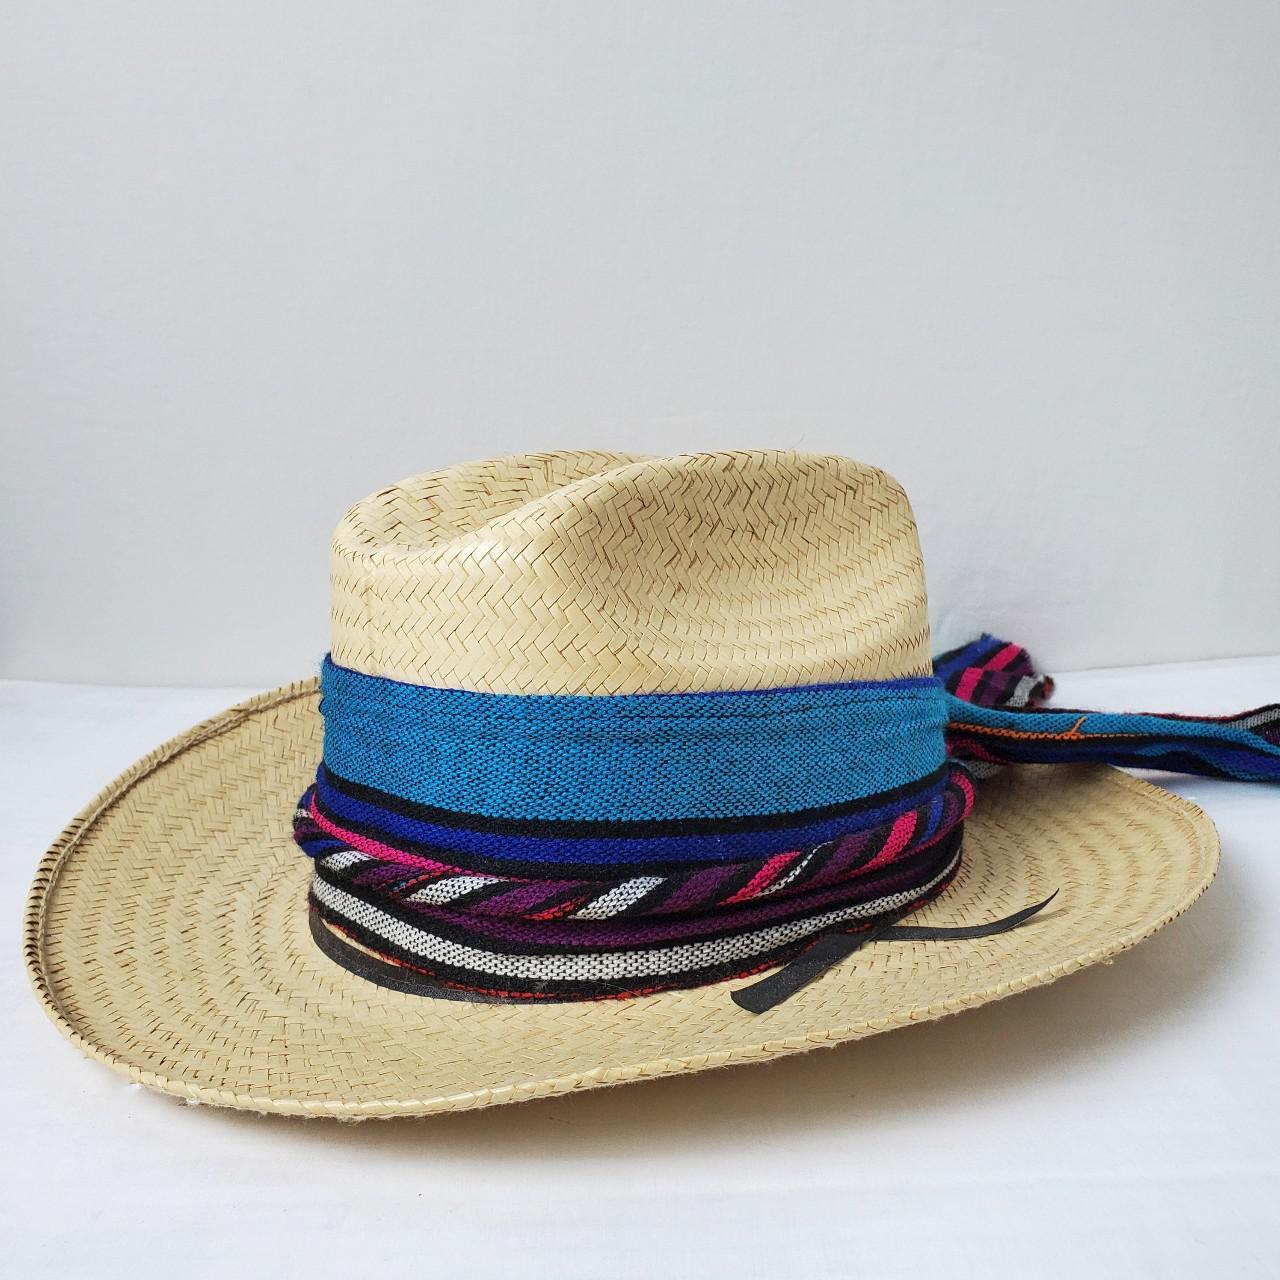 Product Image 1 - Vintage western straw hat

🏷️ BOGO